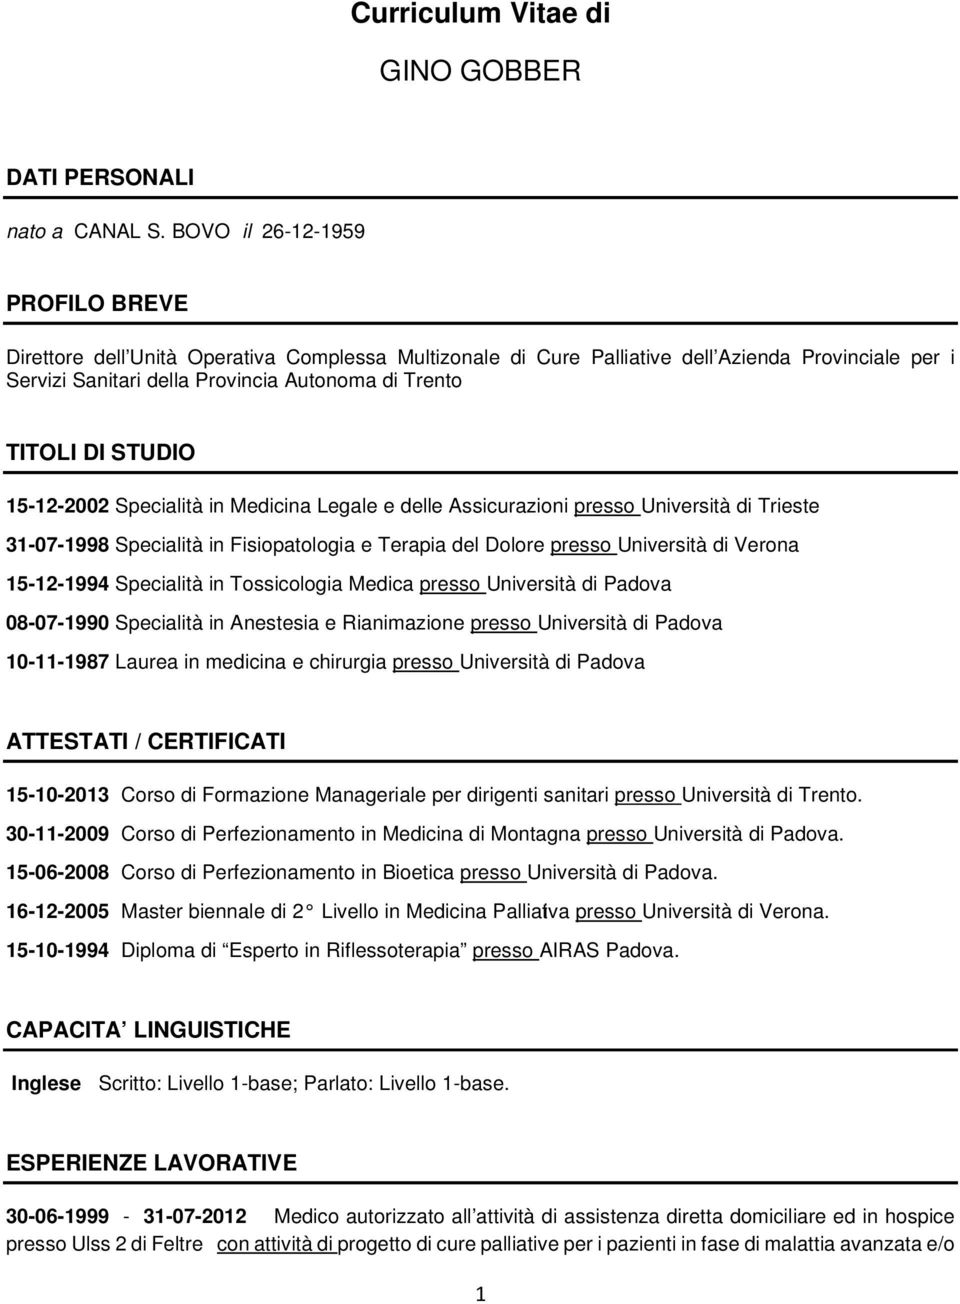 STUDIO 15-12-2002 Specialità in Medicina Legale e delle Assicurazioni presso Università di Trieste 31-07-1998 Specialità in Fisiopatologia e Terapia del Dolore presso Università di Verona 15-12-1994